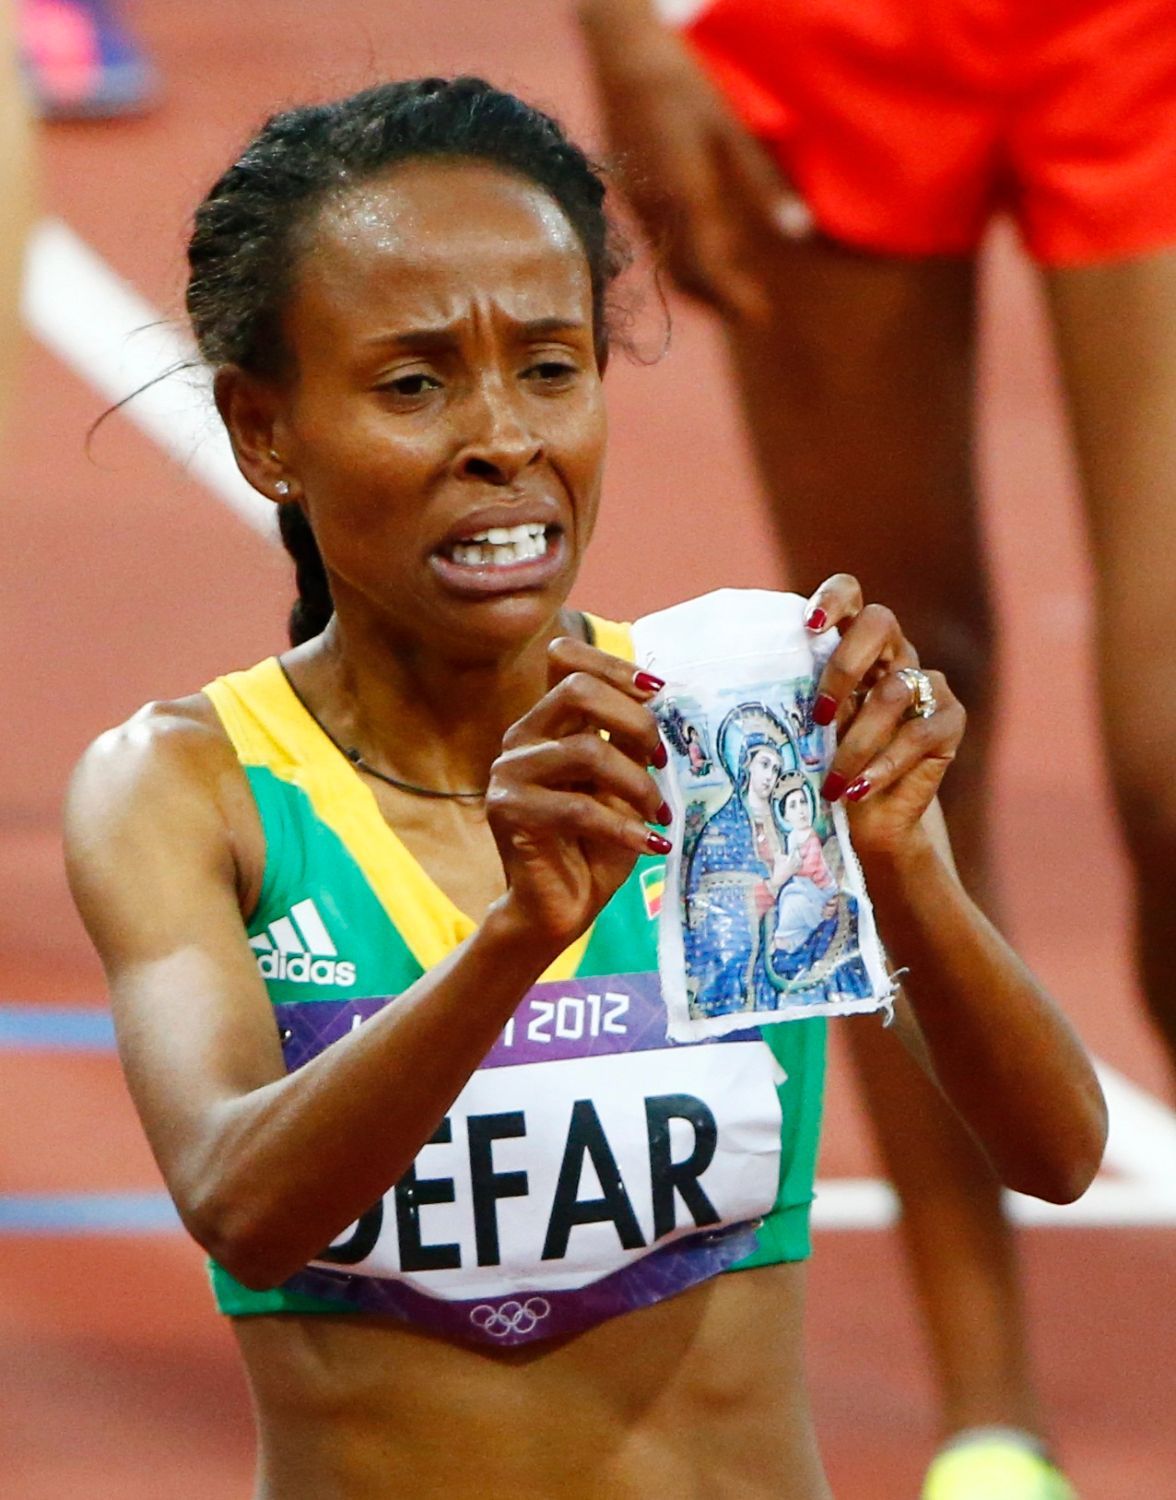 Etiopská dálková běžkyně Meseret Defarová ukazuje kousek látky s náboženskou ikonou po vítězství v běhu na 5000 metrů na OH 2012 v Londýně.